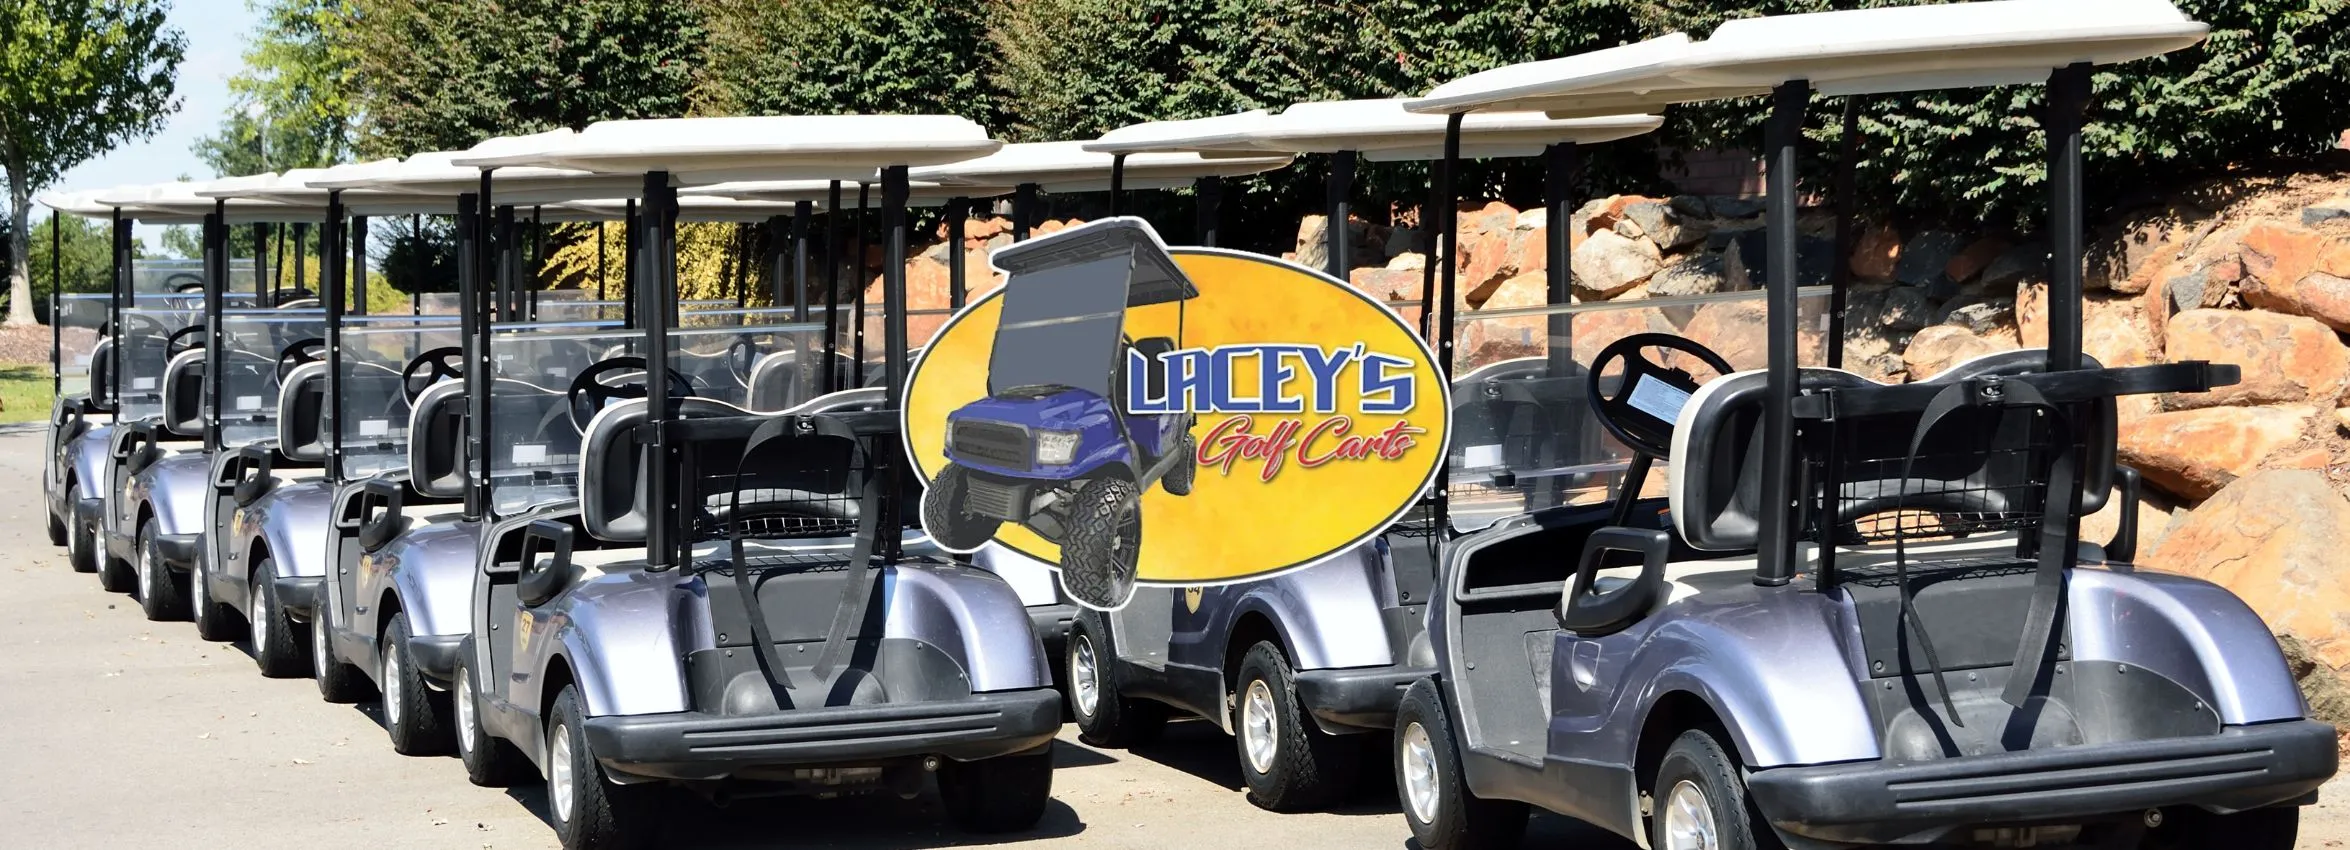 Laceys-Golf-Carts_Desktop_ET-